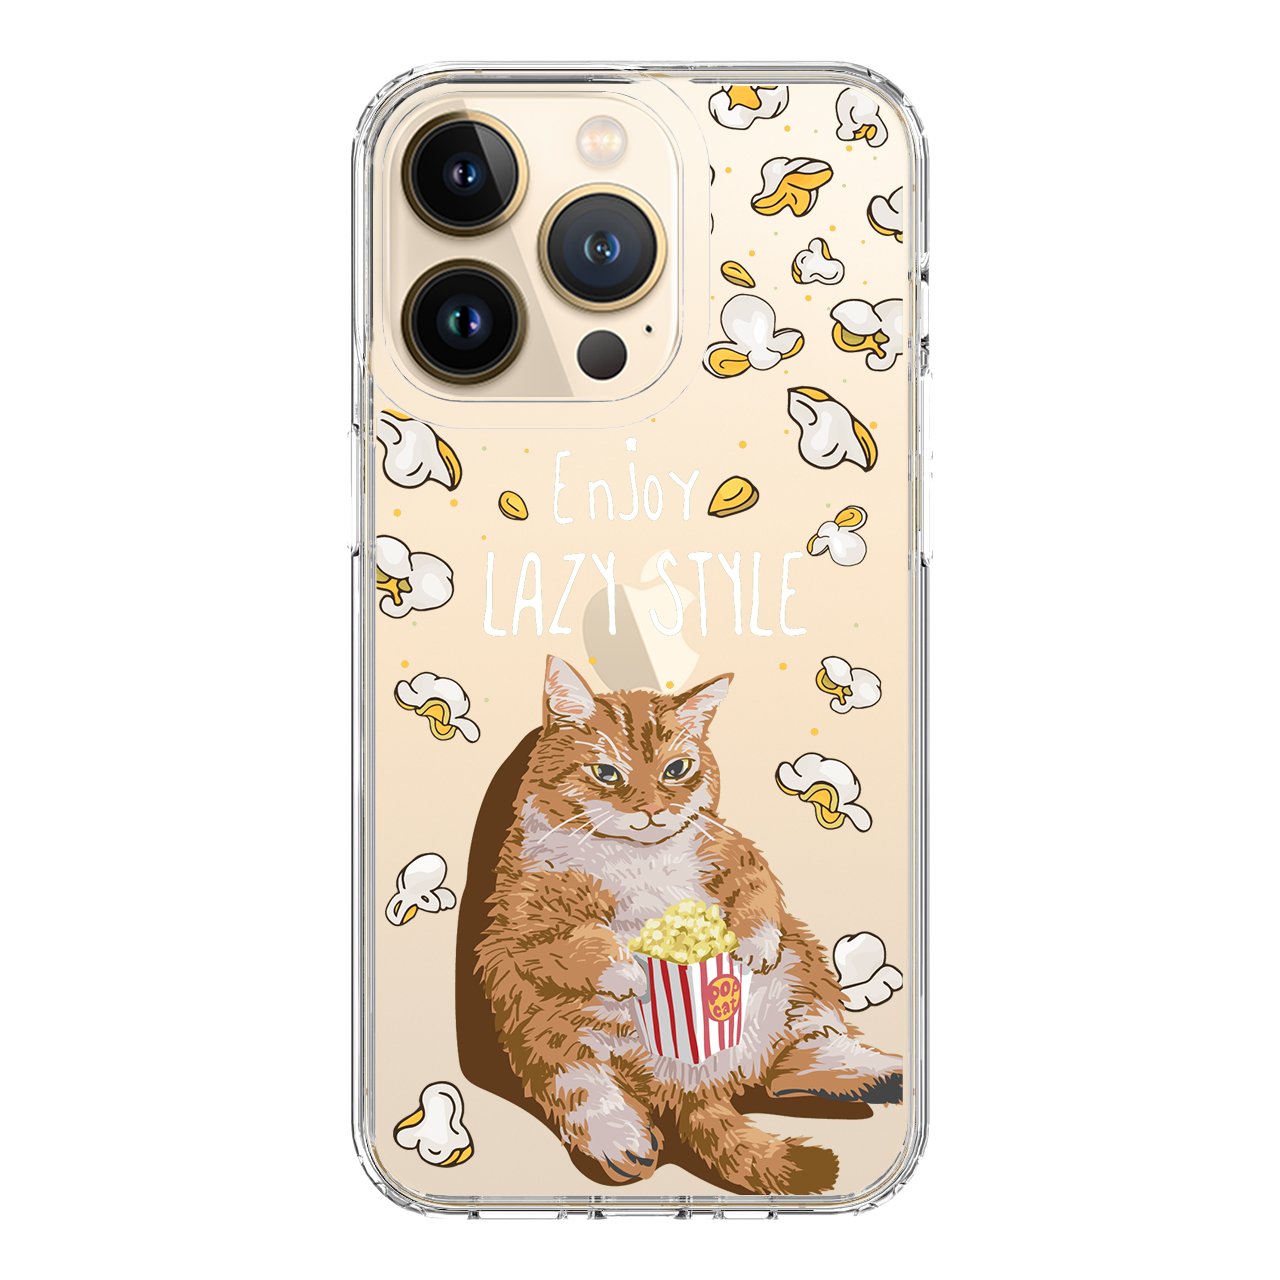 HI-SHIELD Stylish เคสใสกันกระแทก iPhone รุ่น Cattycat [เคส iPhone12][เคส iPhone 13]